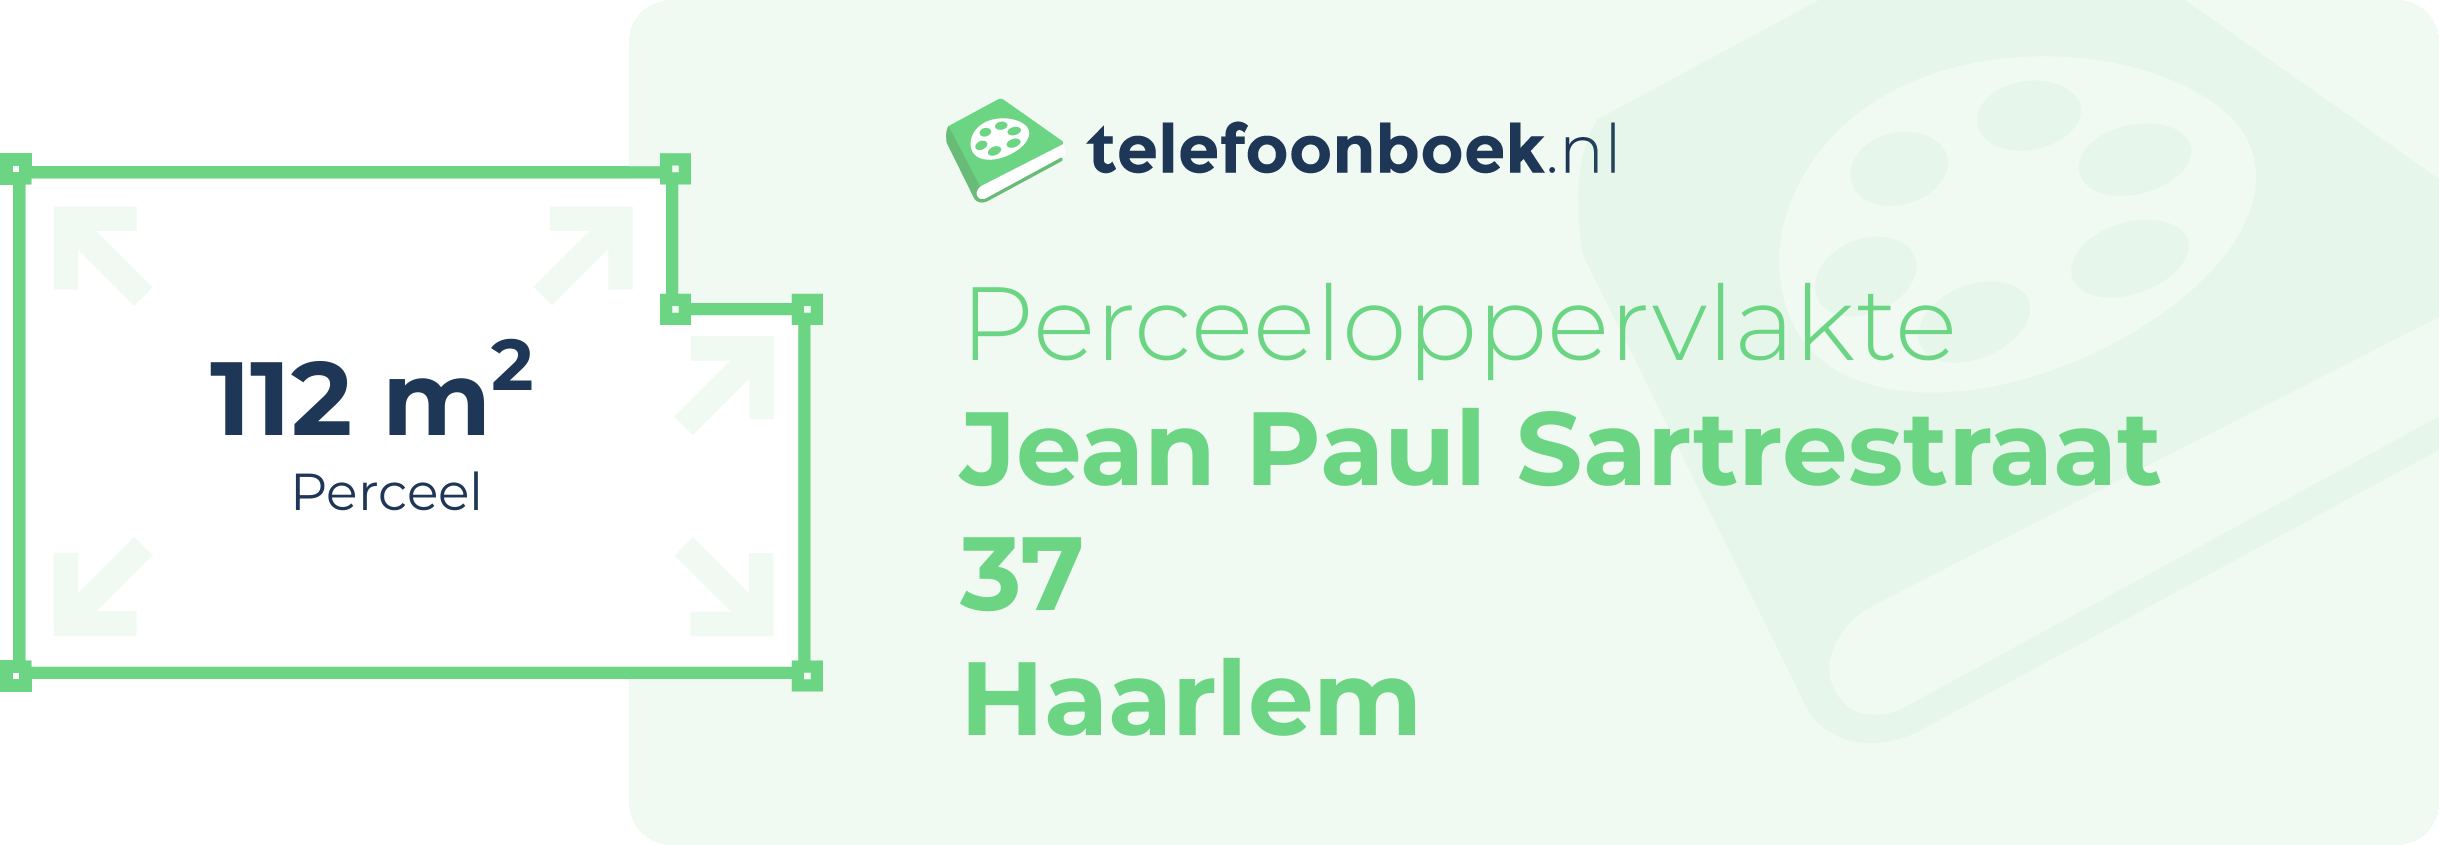 Perceeloppervlakte Jean Paul Sartrestraat 37 Haarlem